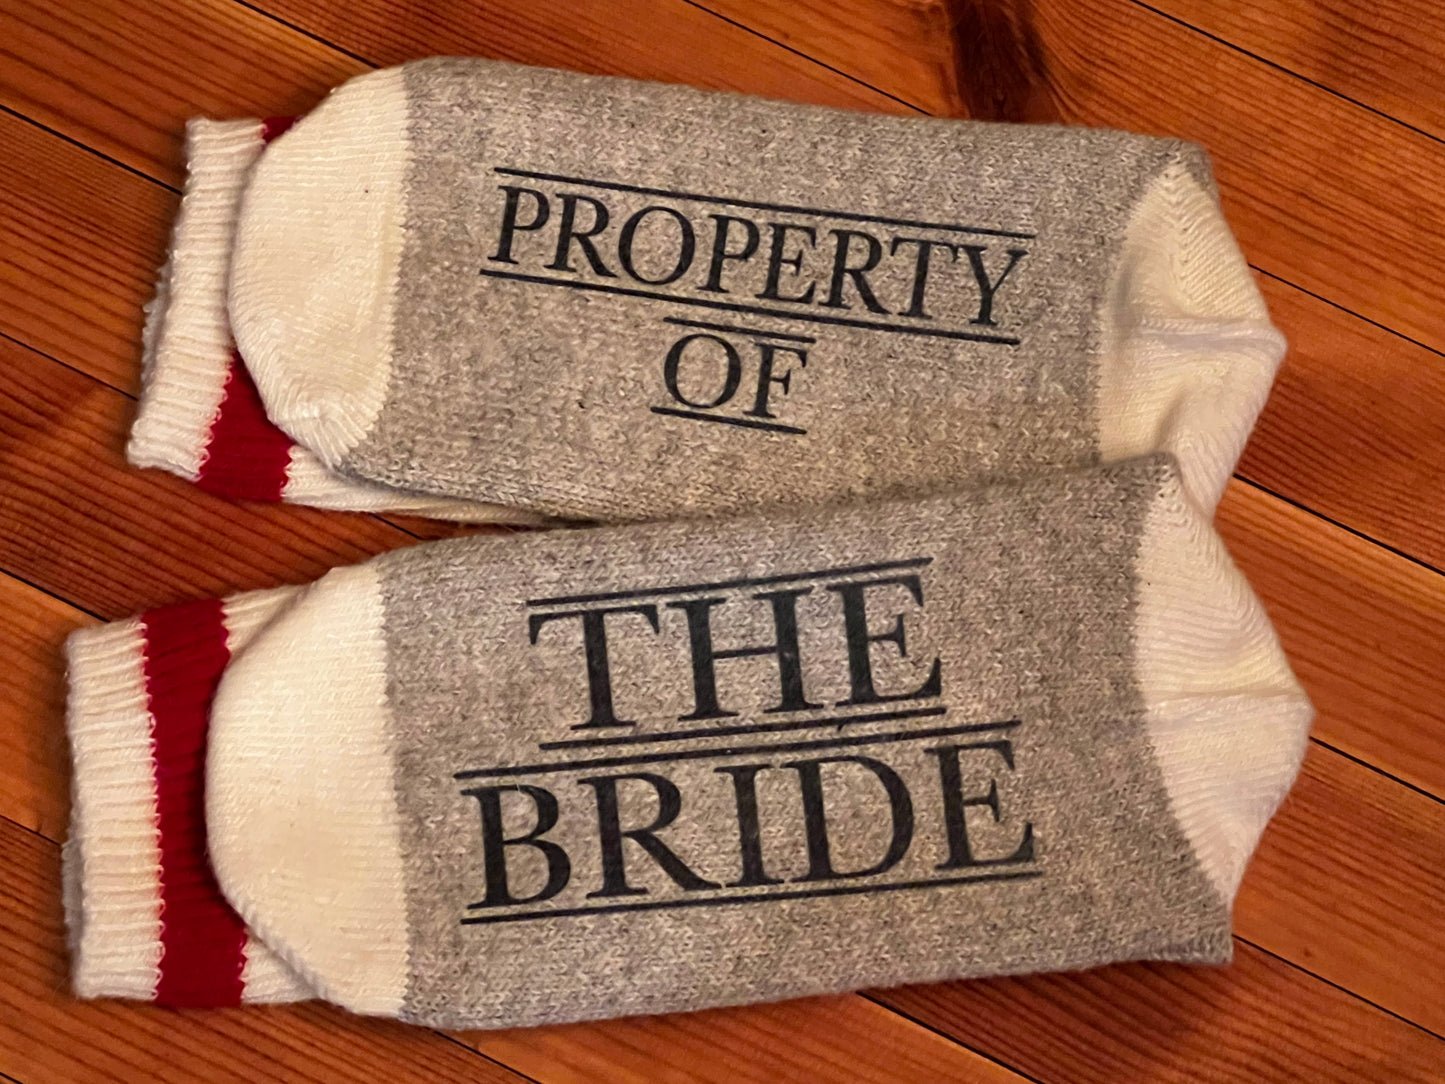 Bride & Groom Socks